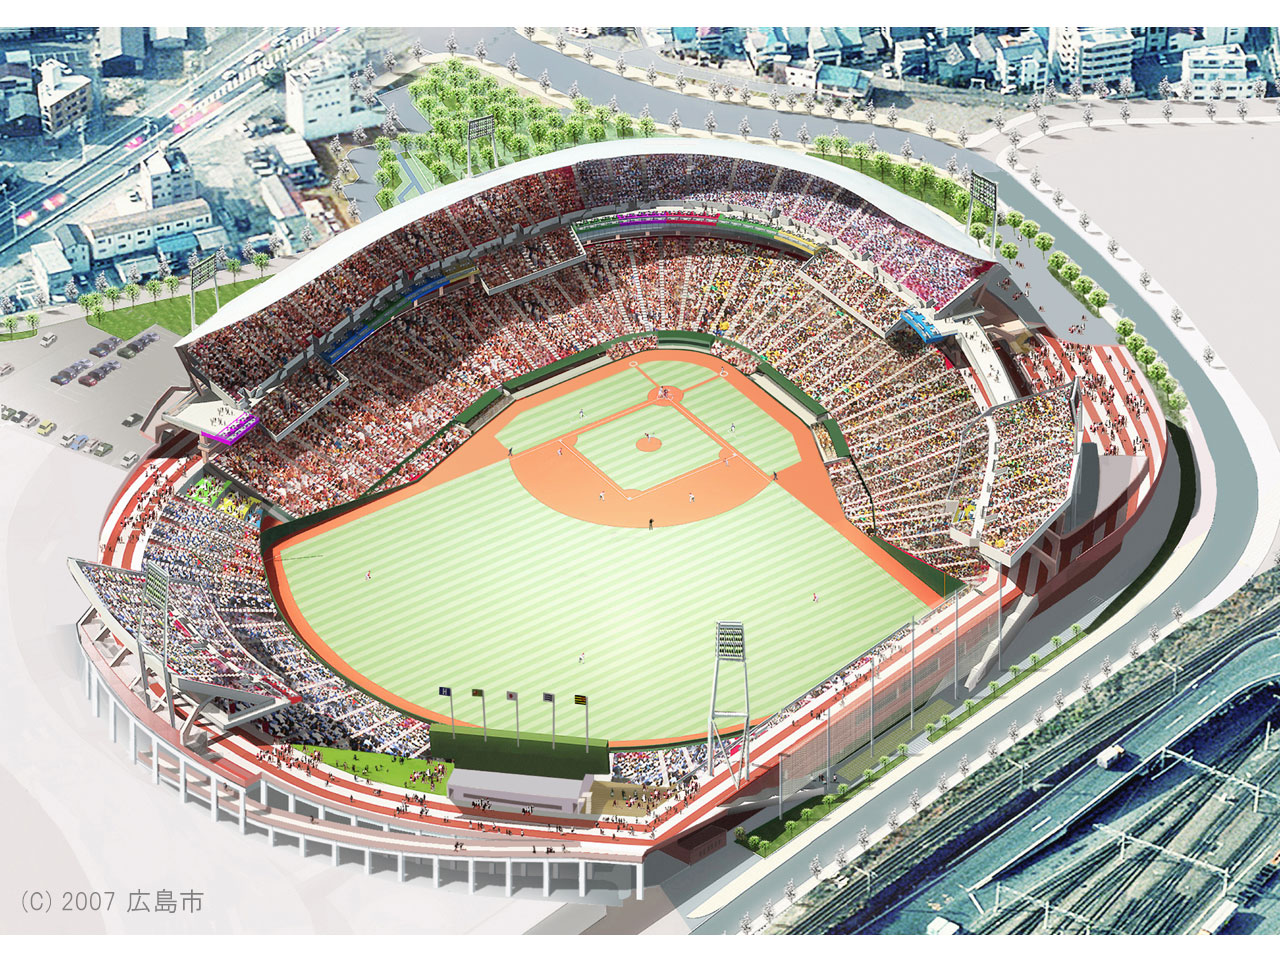 壁紙ダウンロード 広島市民球場のイメージ 広島市公式ホームページ